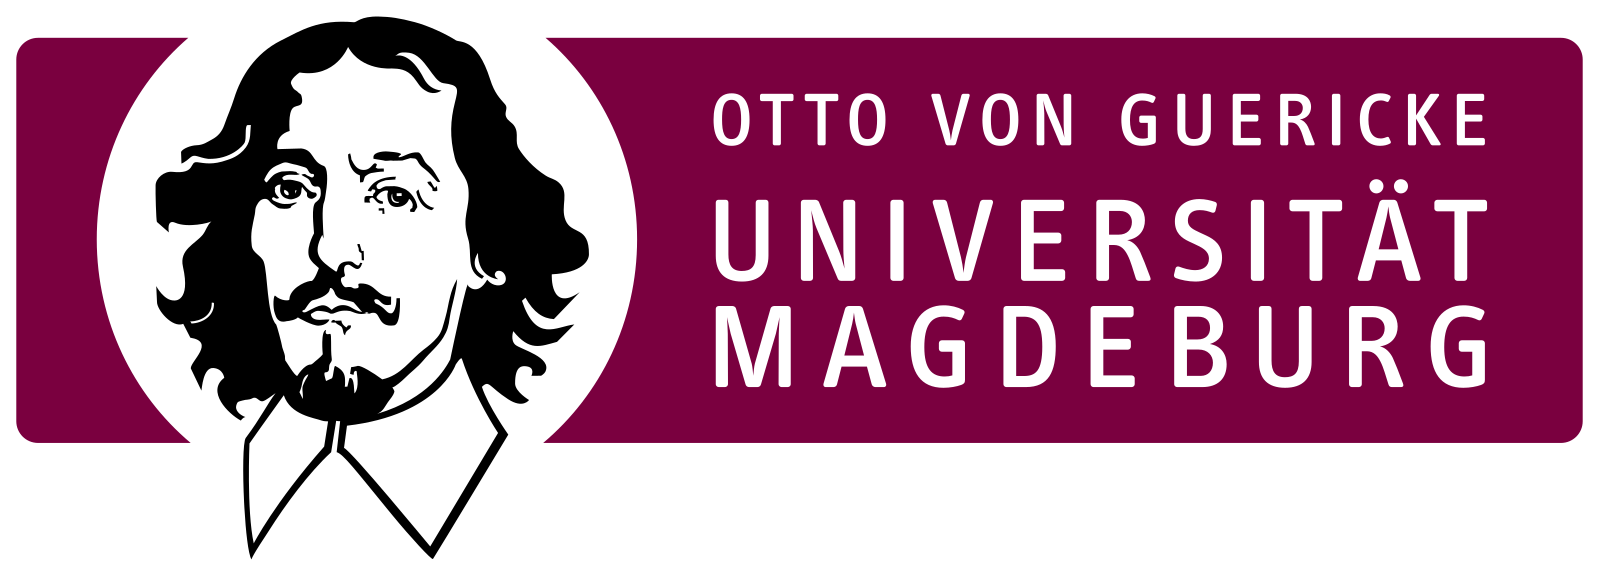 Otto-von-Guericke-Universität Magdeburg Logo